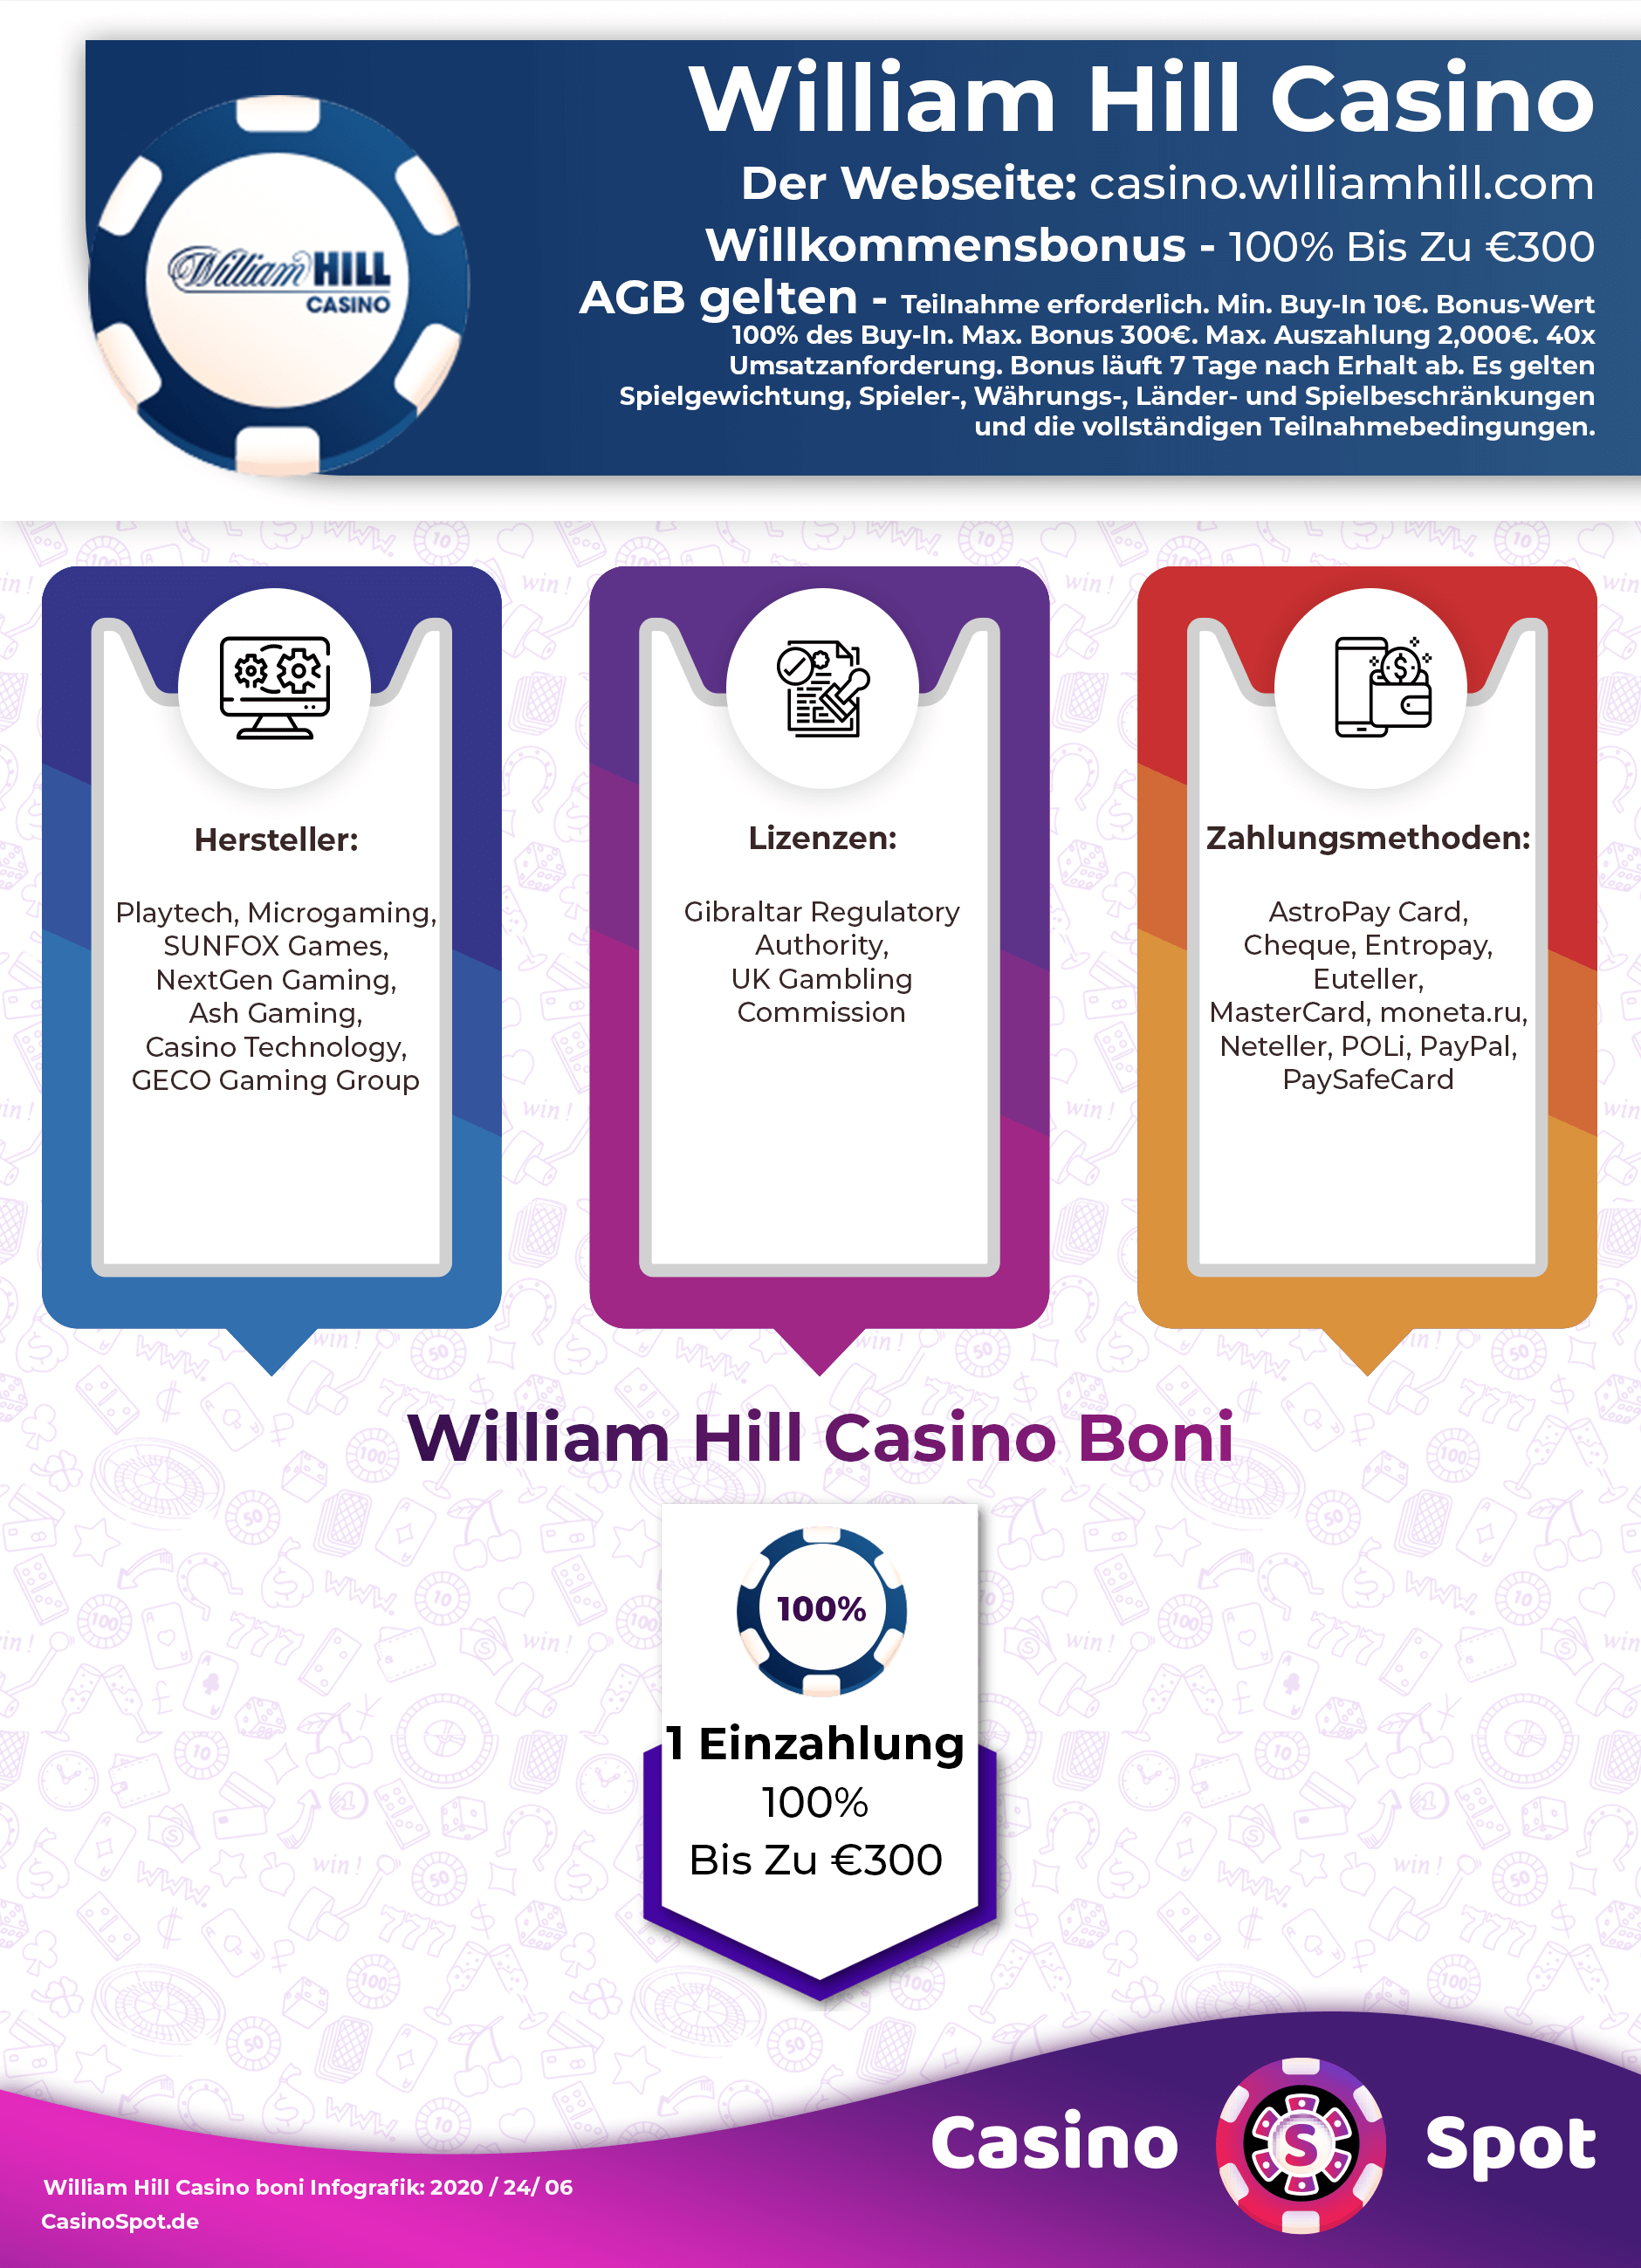 William Hill Casino No Deposit Bonus Code